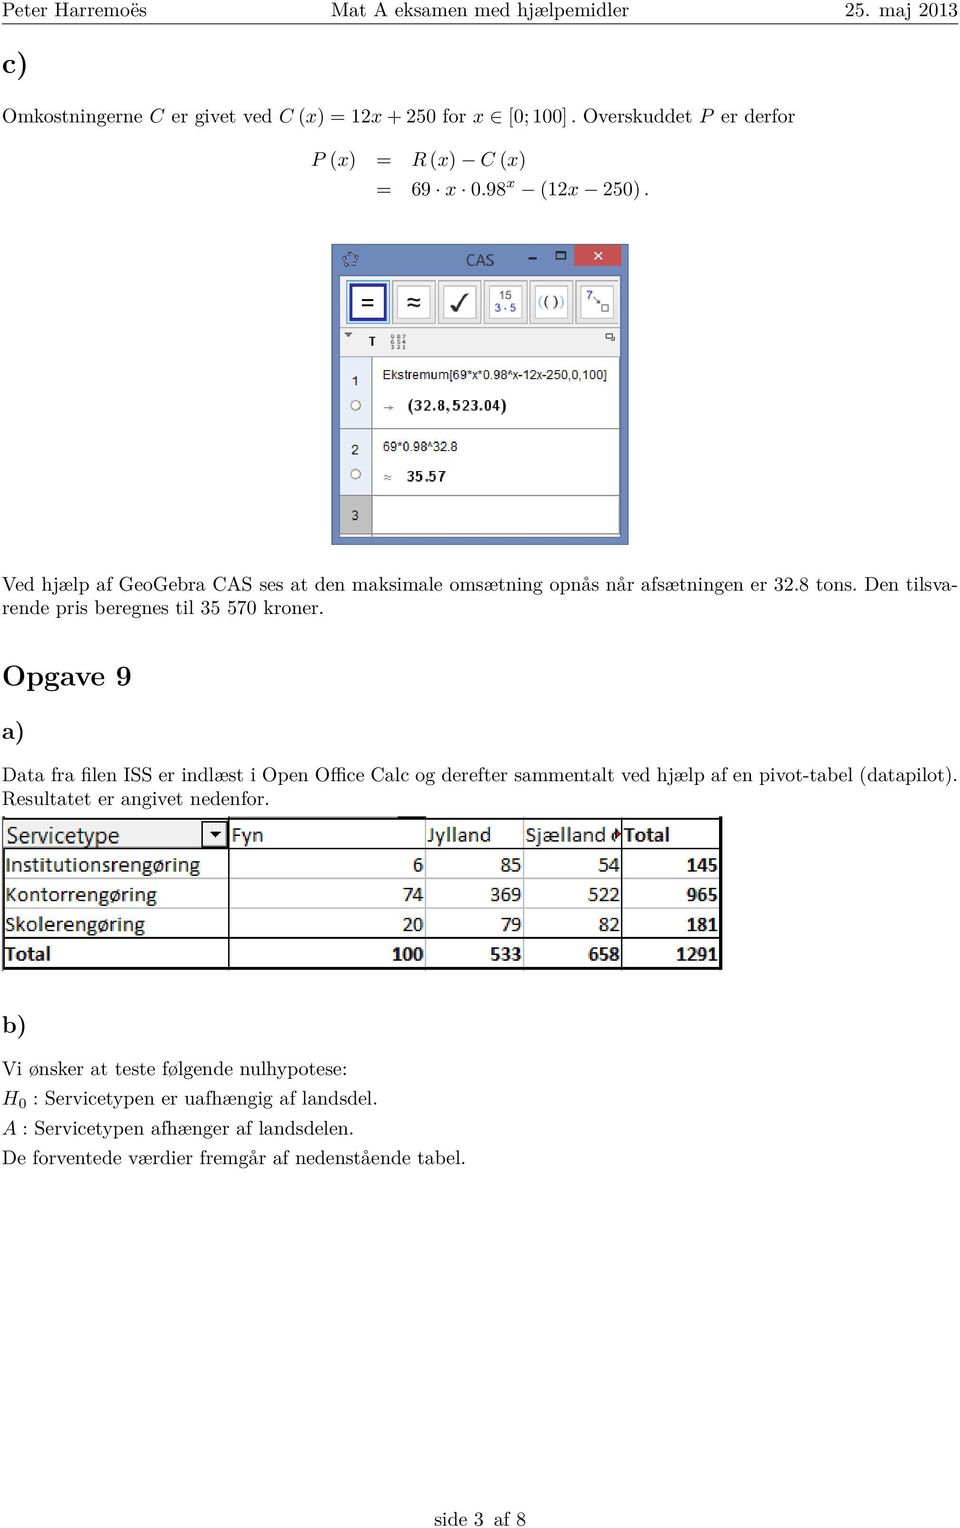 Opgave 9 Data fra filen ISS er indlæst i Open Office Calc og derefter sammentalt ved hjælp af en pivot-tabel (datapilot). Resultatet er angivet nedenfor.